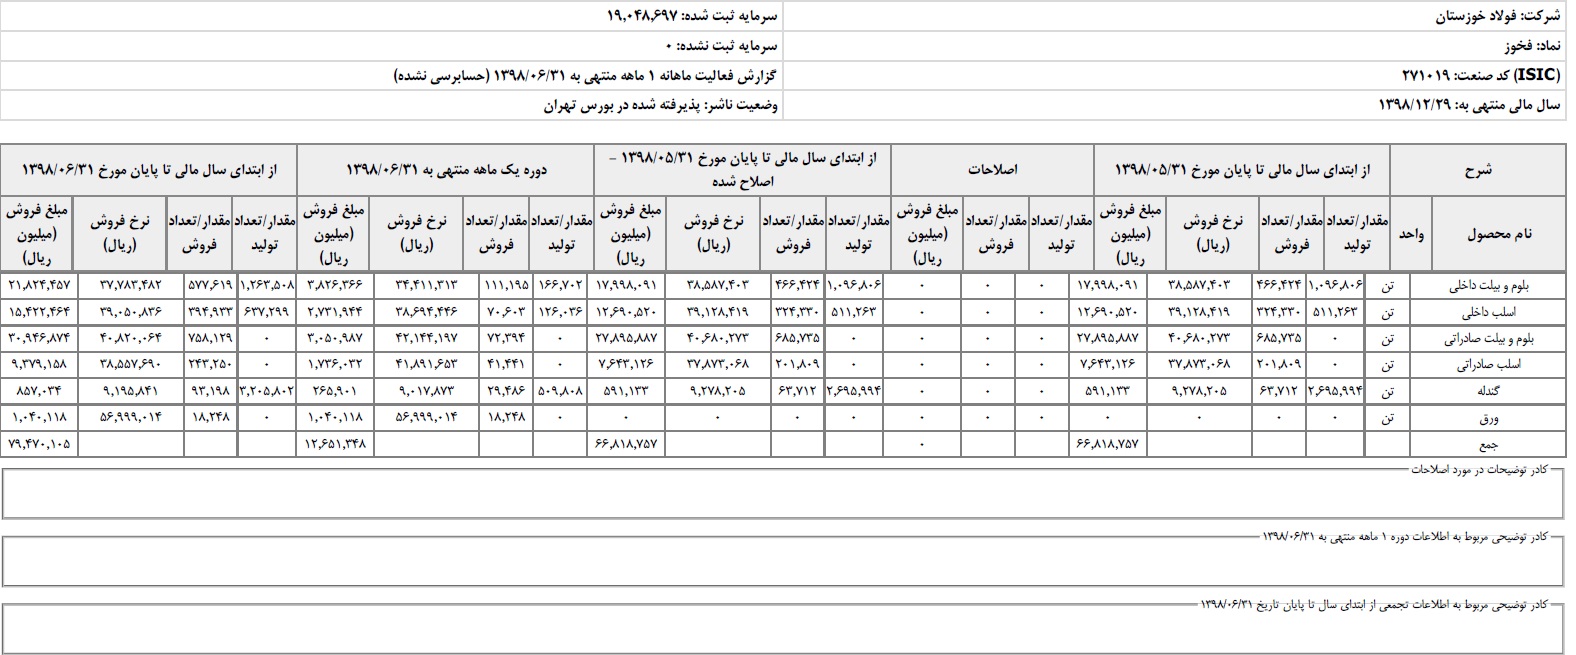 فروش ۷۹ هزار میلیارد ریالی فولاد خوزستان در ۶ ماهه اول سال/ "فخوز" همچنان موفق در صادرات/ برنامه صادراتی در نیمه اول سال محقق شد/ یک میلیون تن صادرات شمش در ۶ ماه